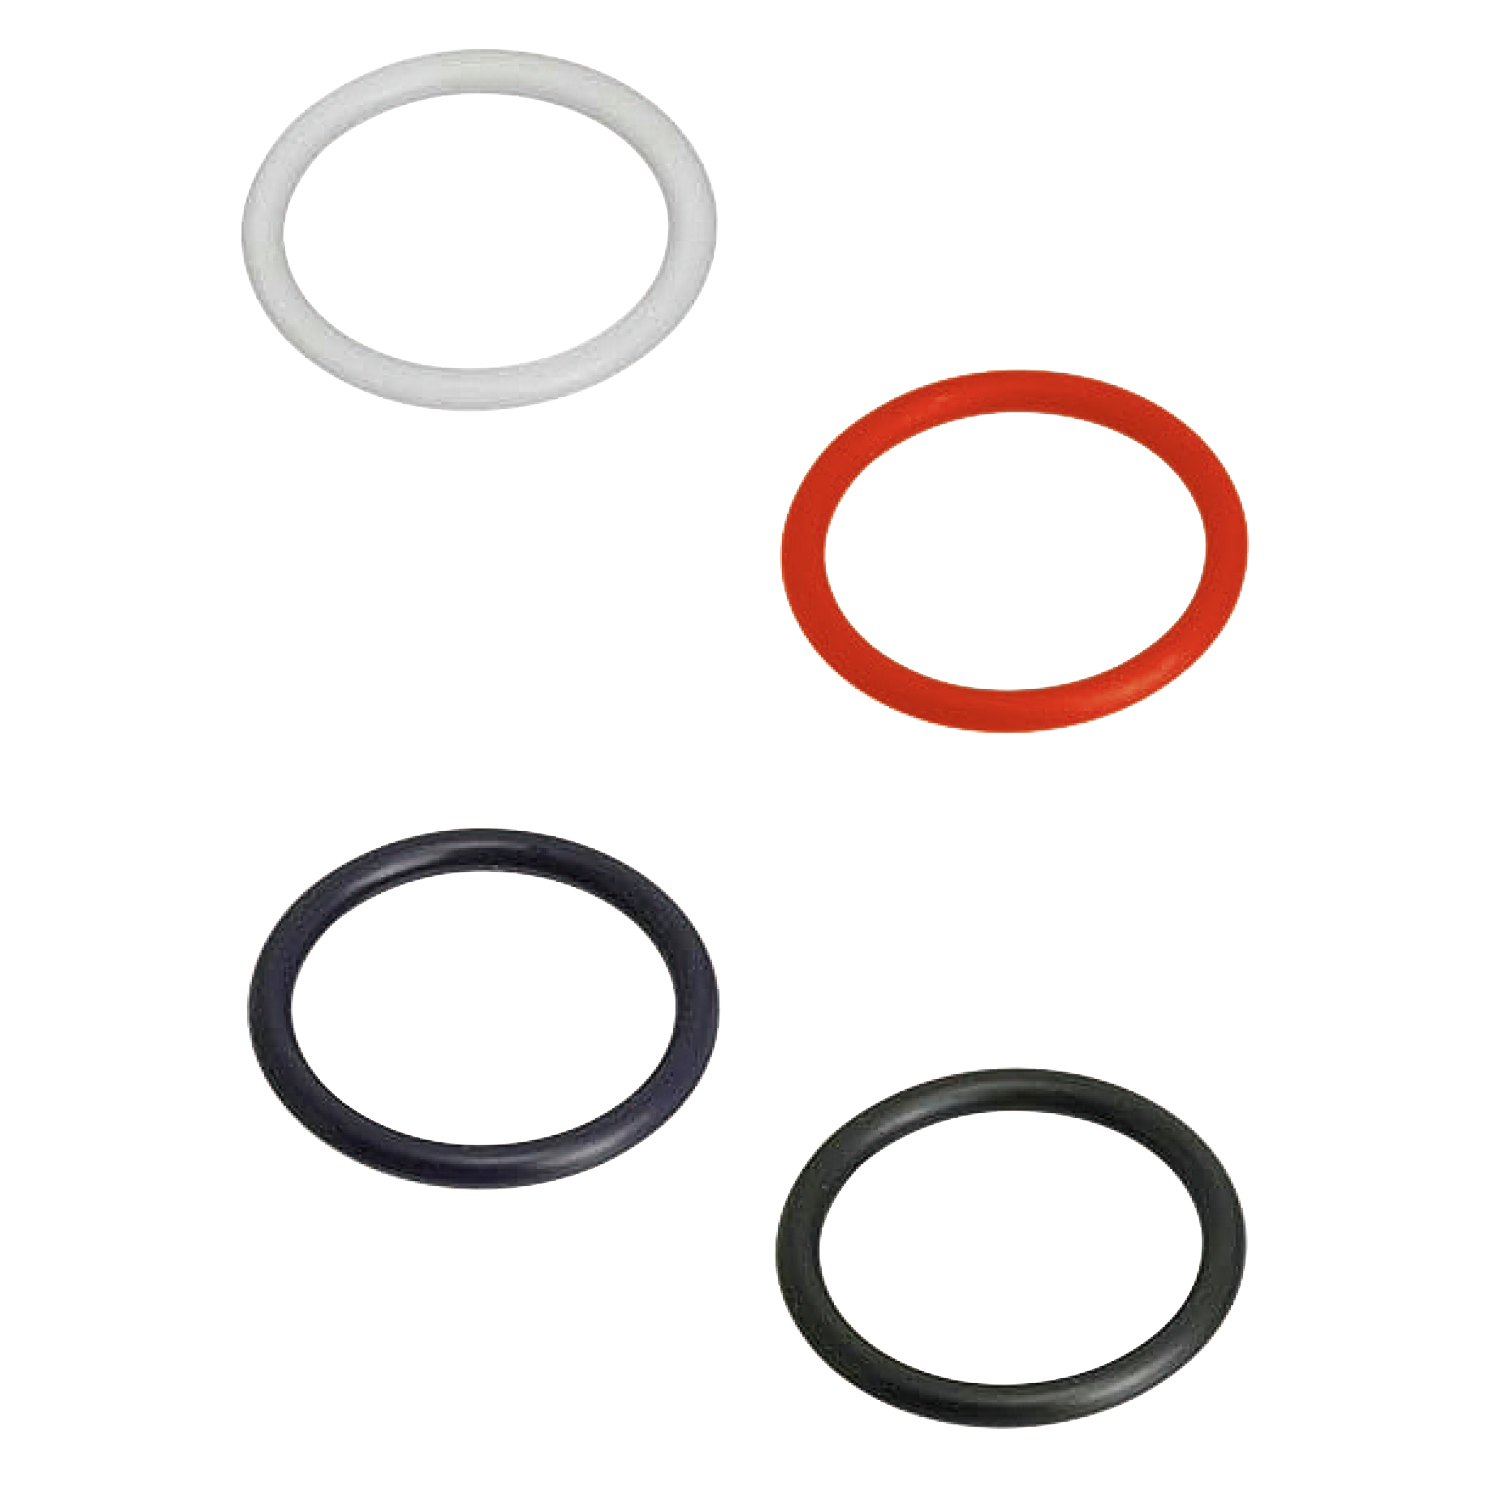 O-Rings - for Static Applications, G Series NGA50